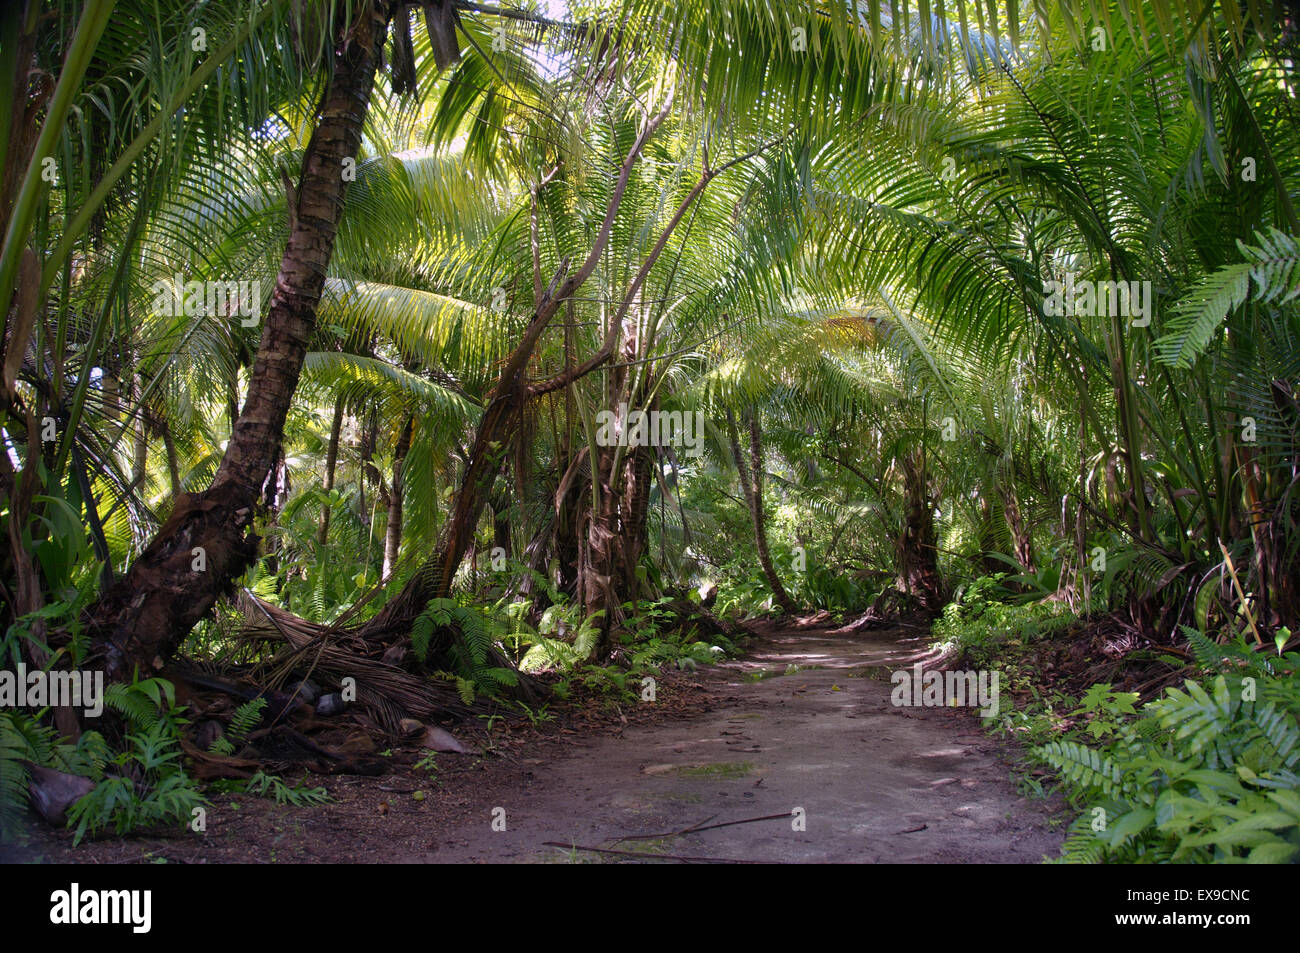 Route de terre dans la jungle, Denis Island, Seychelles Banque D'Images